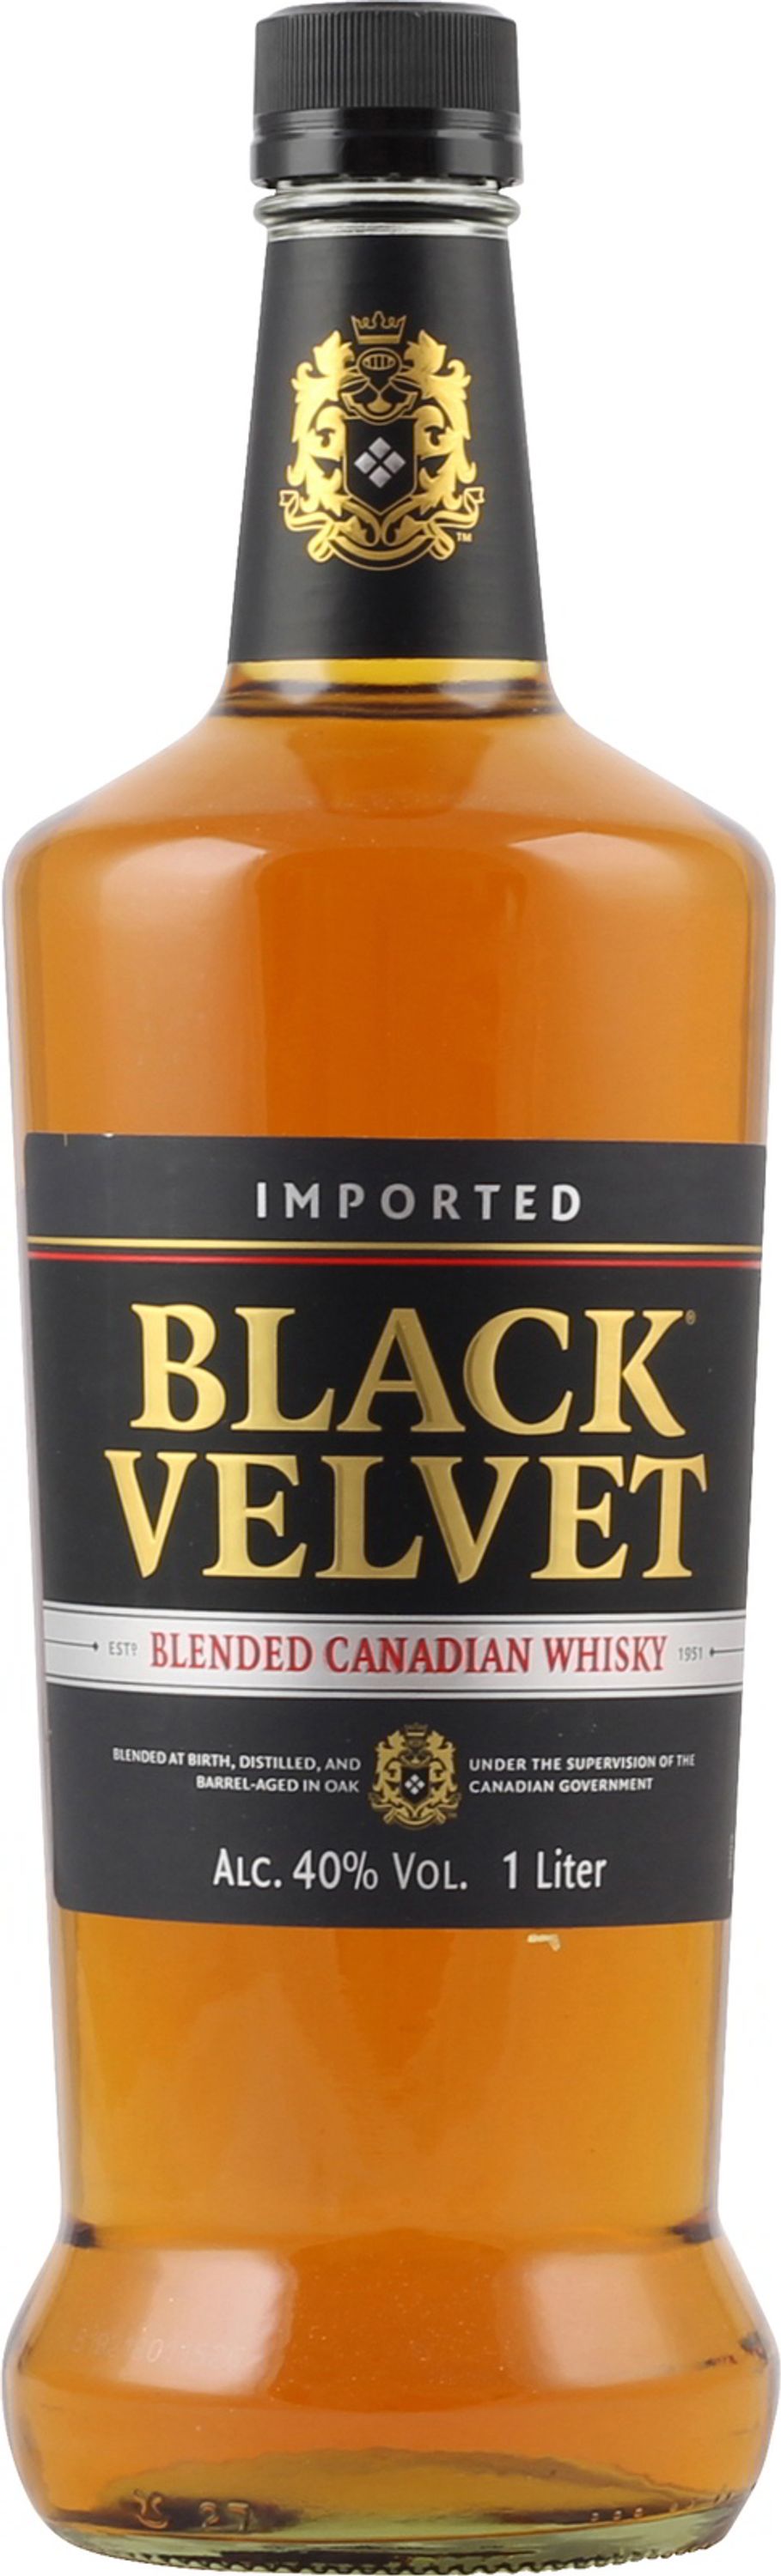 Black Velvet Blended Canadian Whiskey 1.0l, alc. 40% by volume